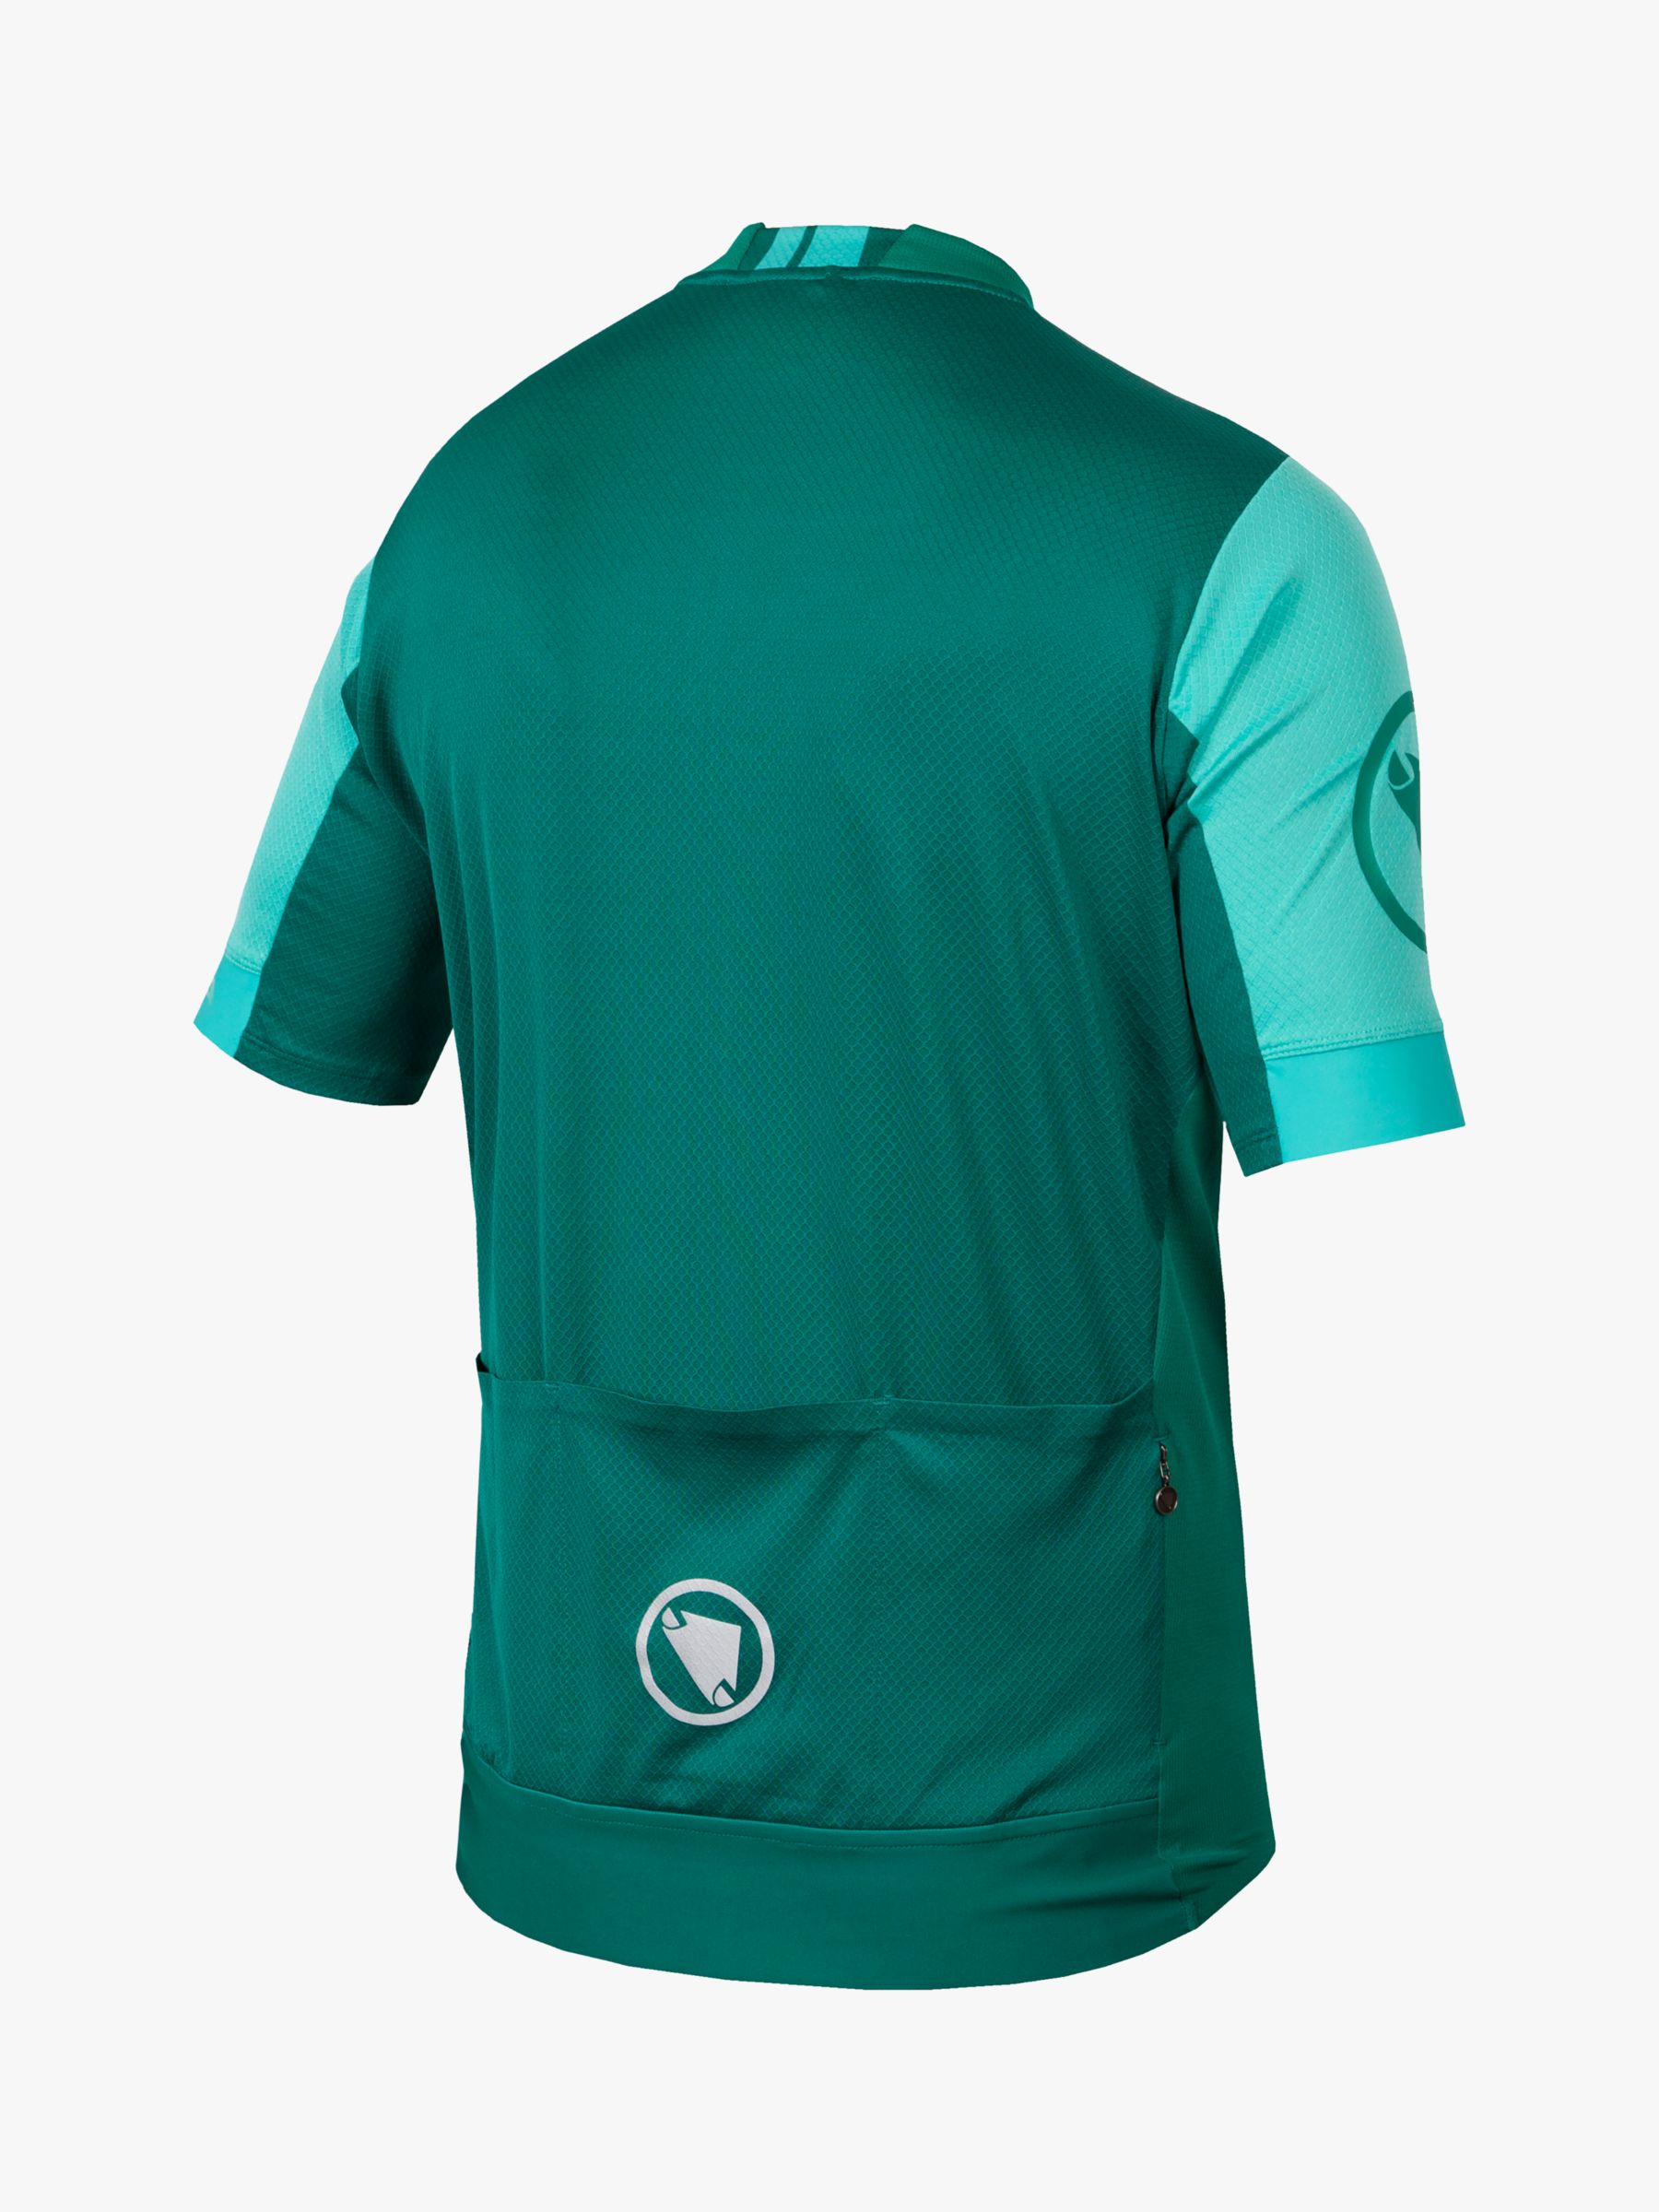 Endura Men's FS260 Short Sleeve Jersey, Emerald Green, S